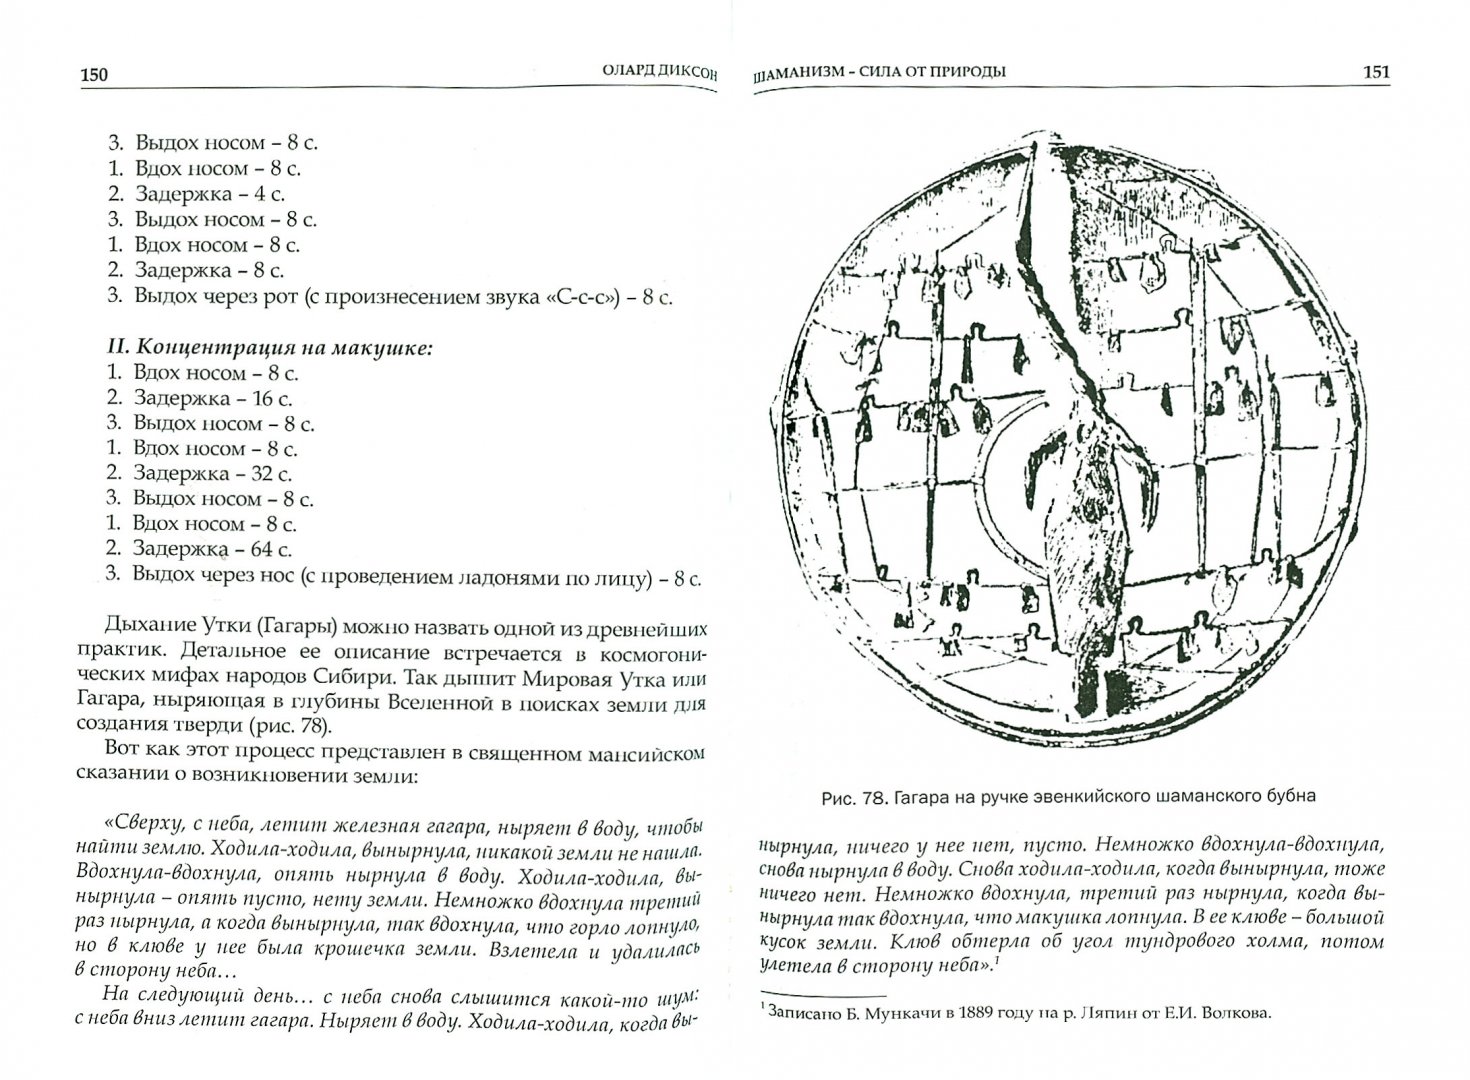 Иллюстрация 1 из 7 для Шаманизм - сила от природы - Олард Диксон | Лабиринт - книги. Источник: Лабиринт